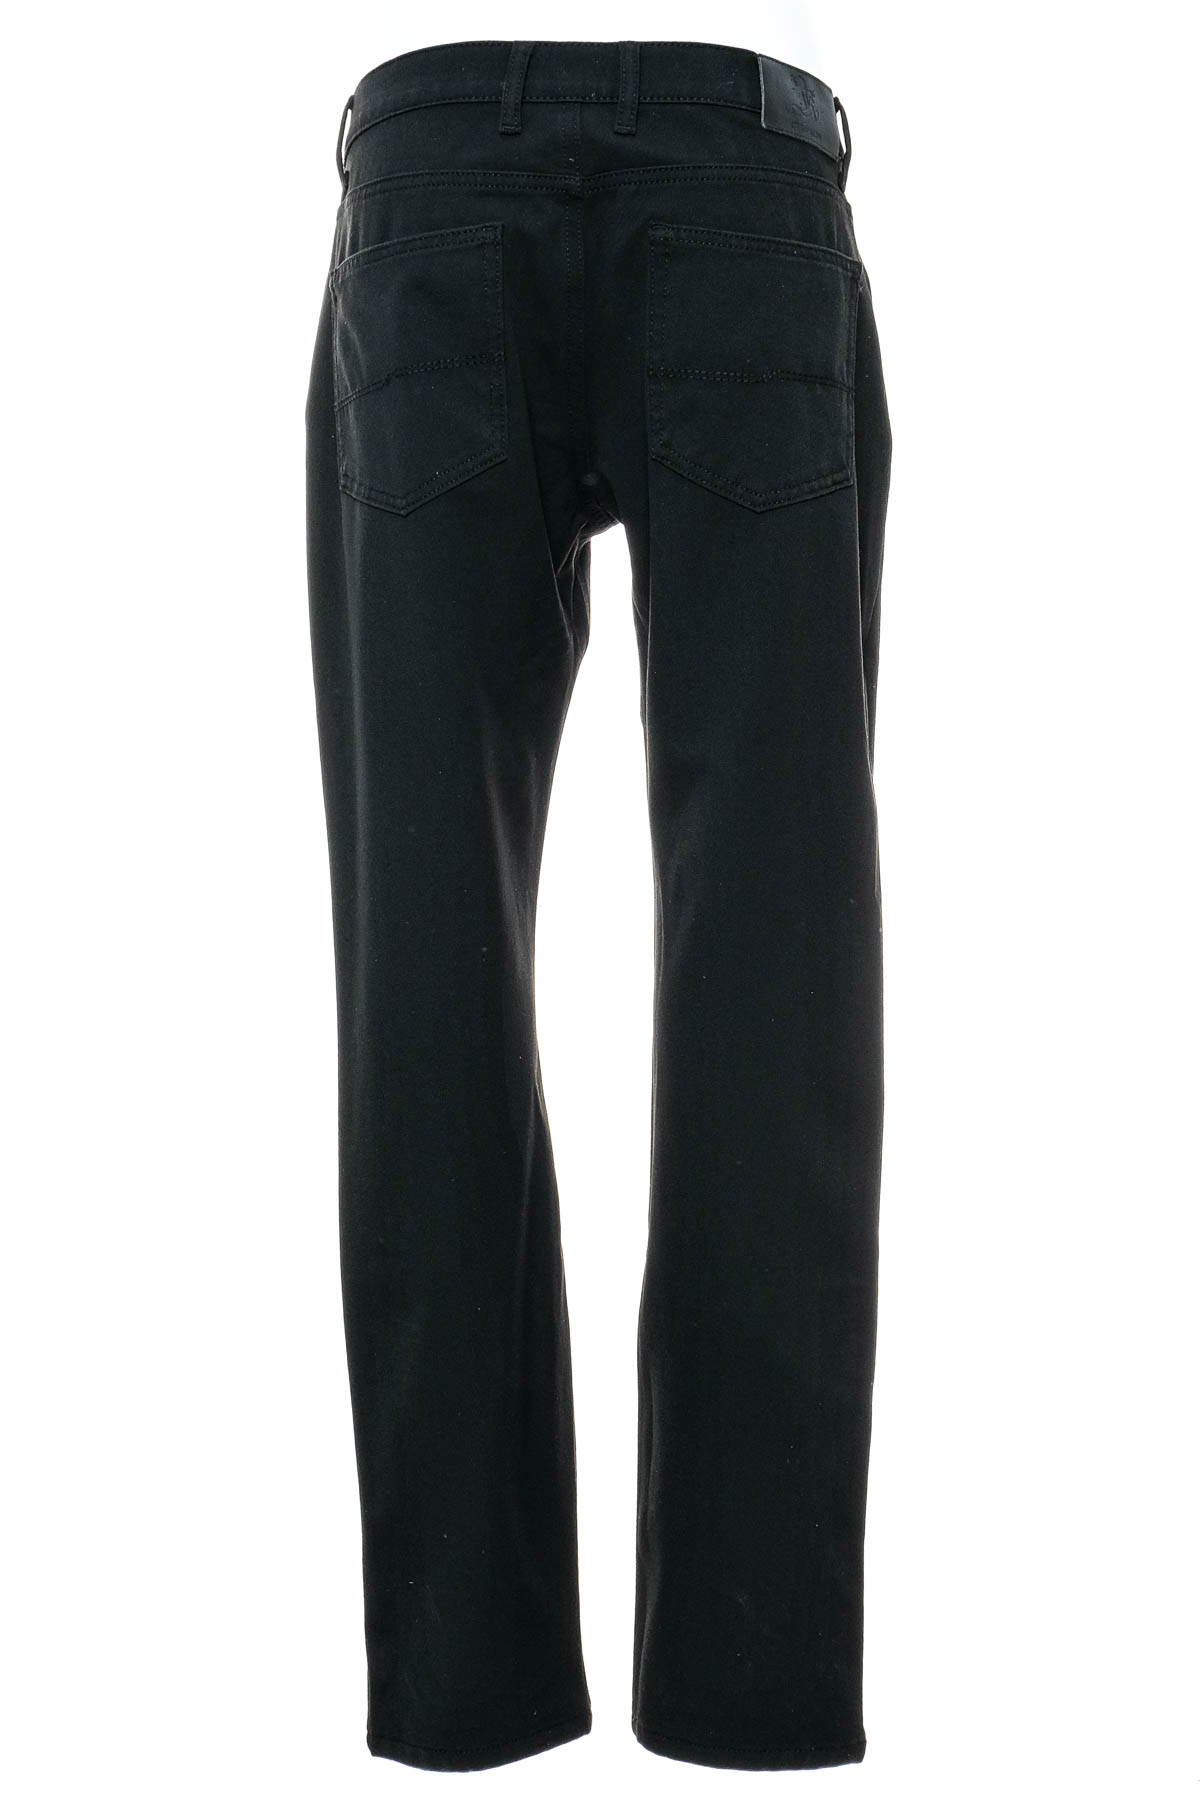 Jeans pentru bărbăți - Otto Kern - 1